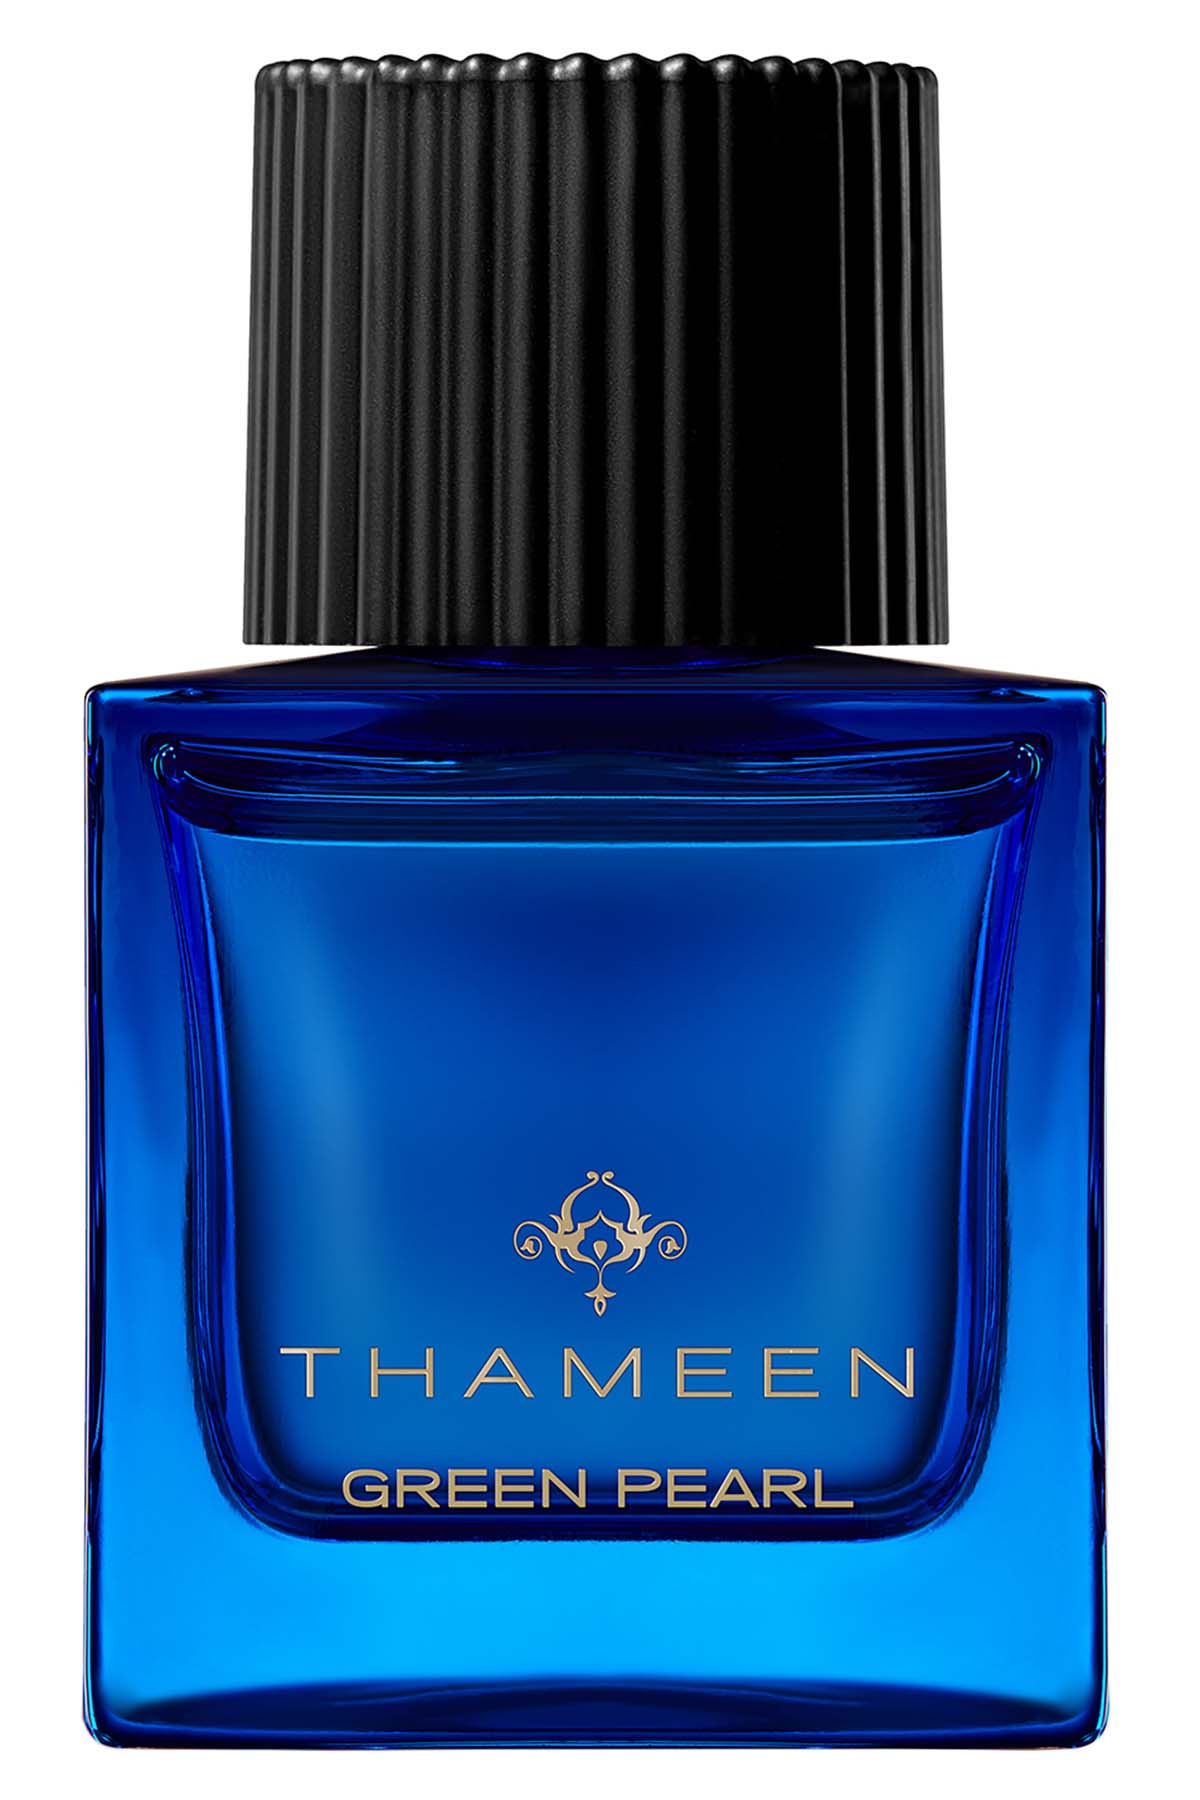 Thameen Green Pearl Extrait de Parfum